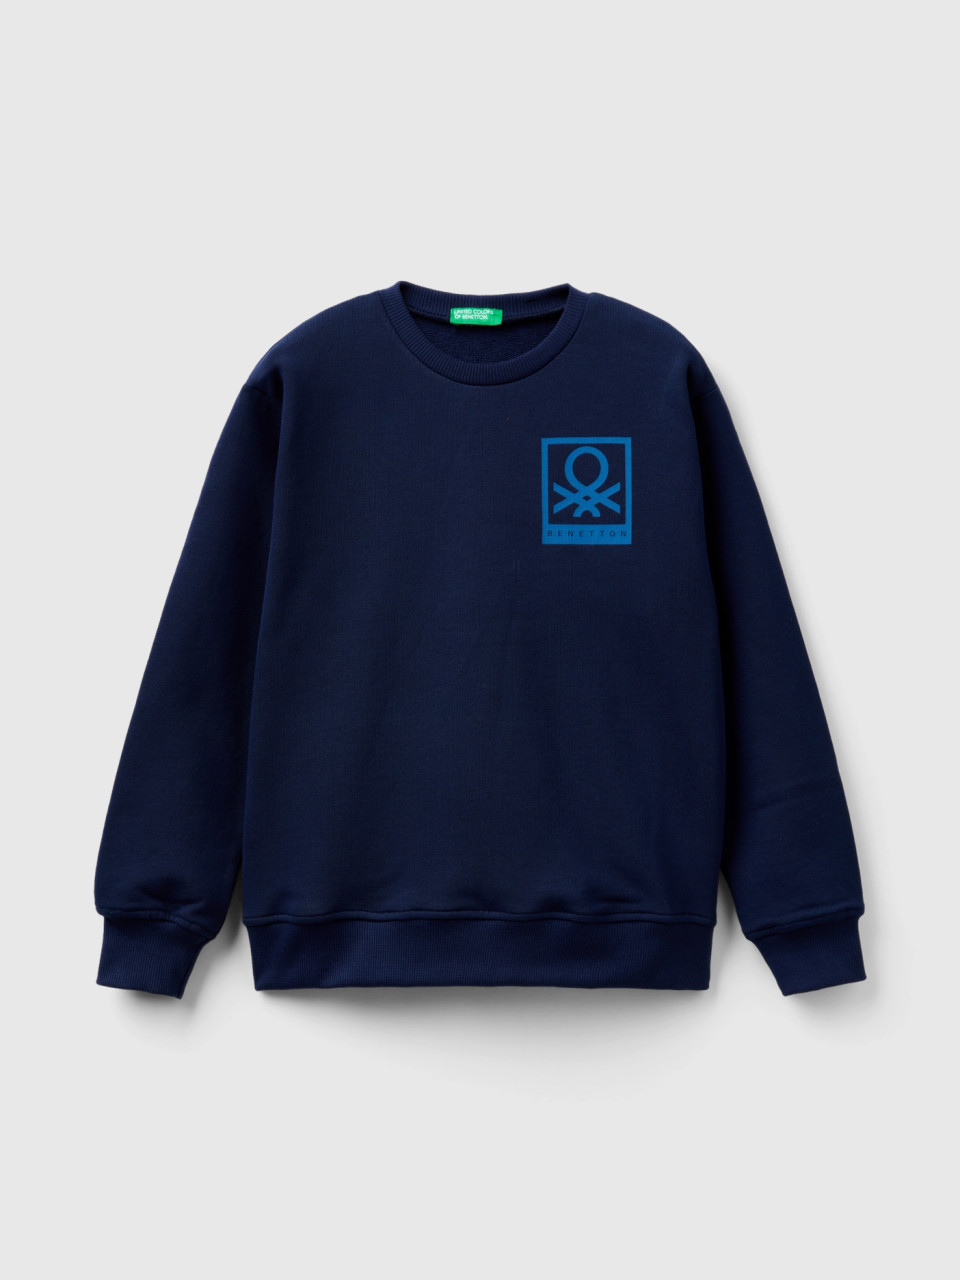 Benetton, Sweatshirt With Logo Print, Dark Blue, Kids